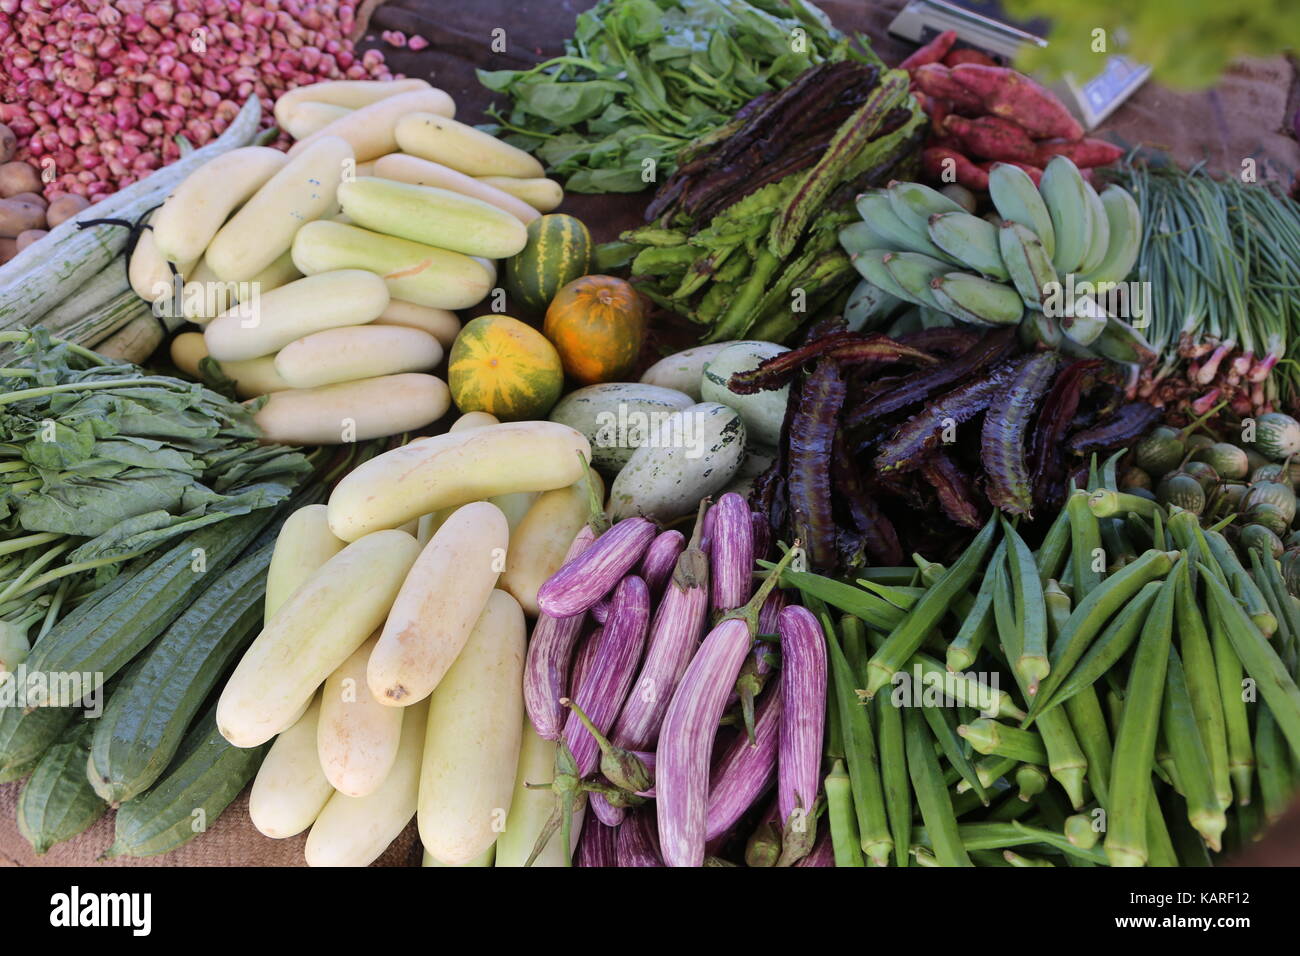 Divers Légumes et fruits sur un marché asiatique --- Verschiedene Gemüse und Früchte auf einem asiatischen markt Banque D'Images